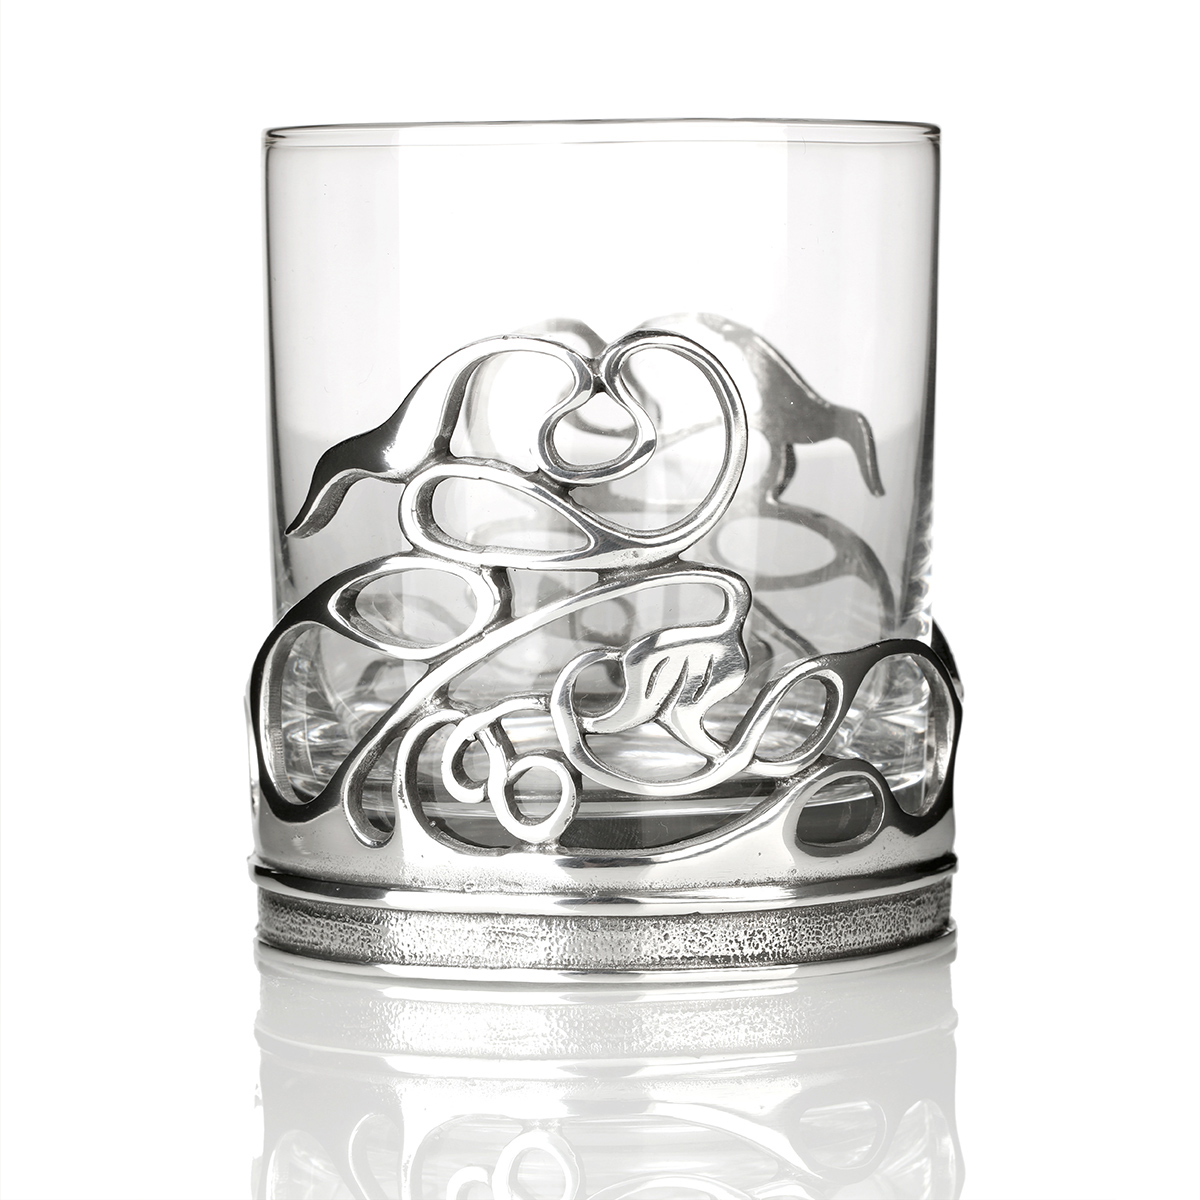 Celtic Swirls Tumbler - Whiskyglas aus England mit keltischem Muster aus Zinn